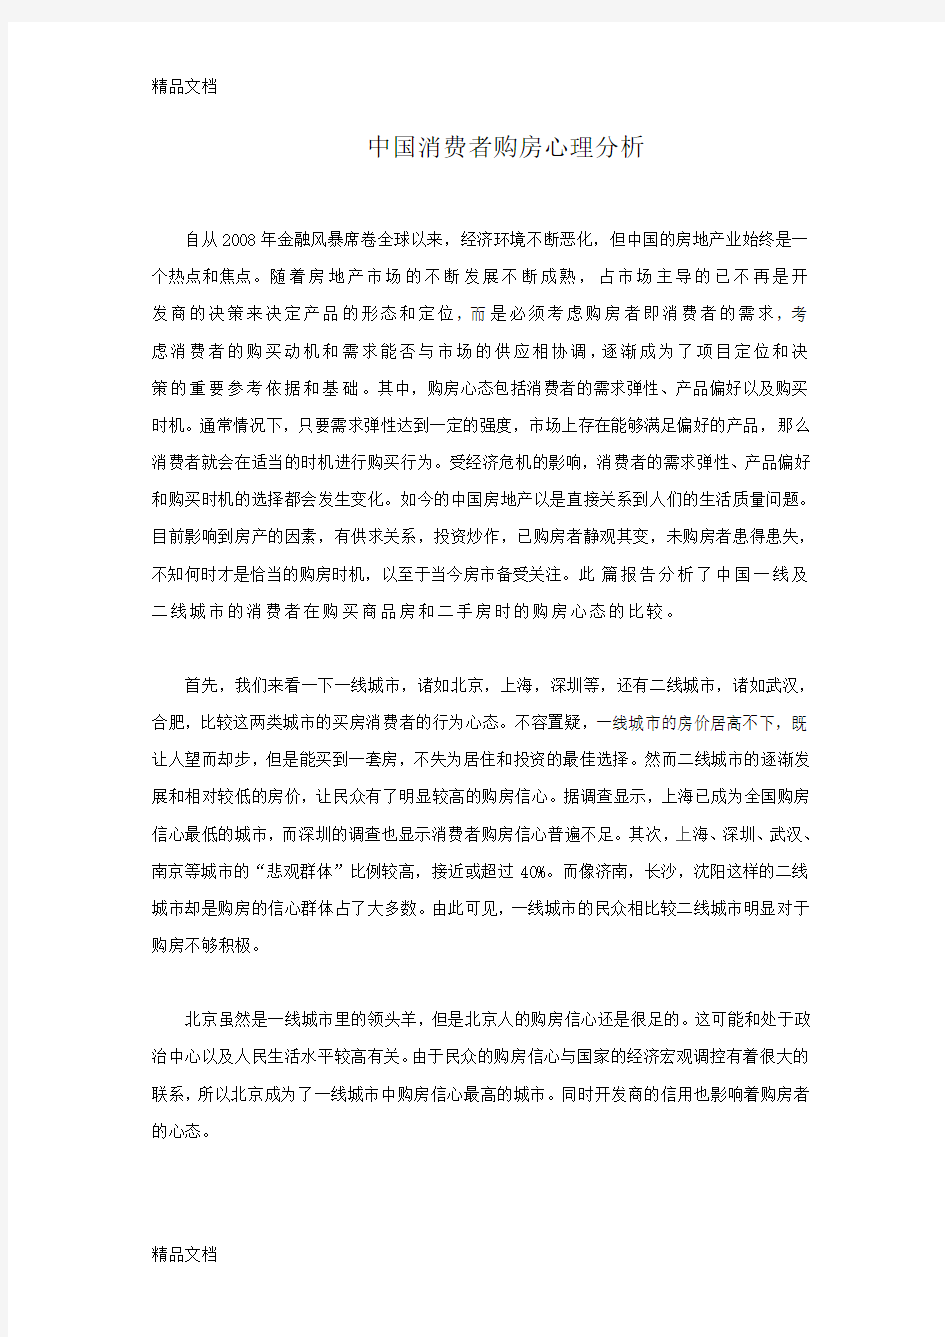 (整理)中国消费者购房心理分析.